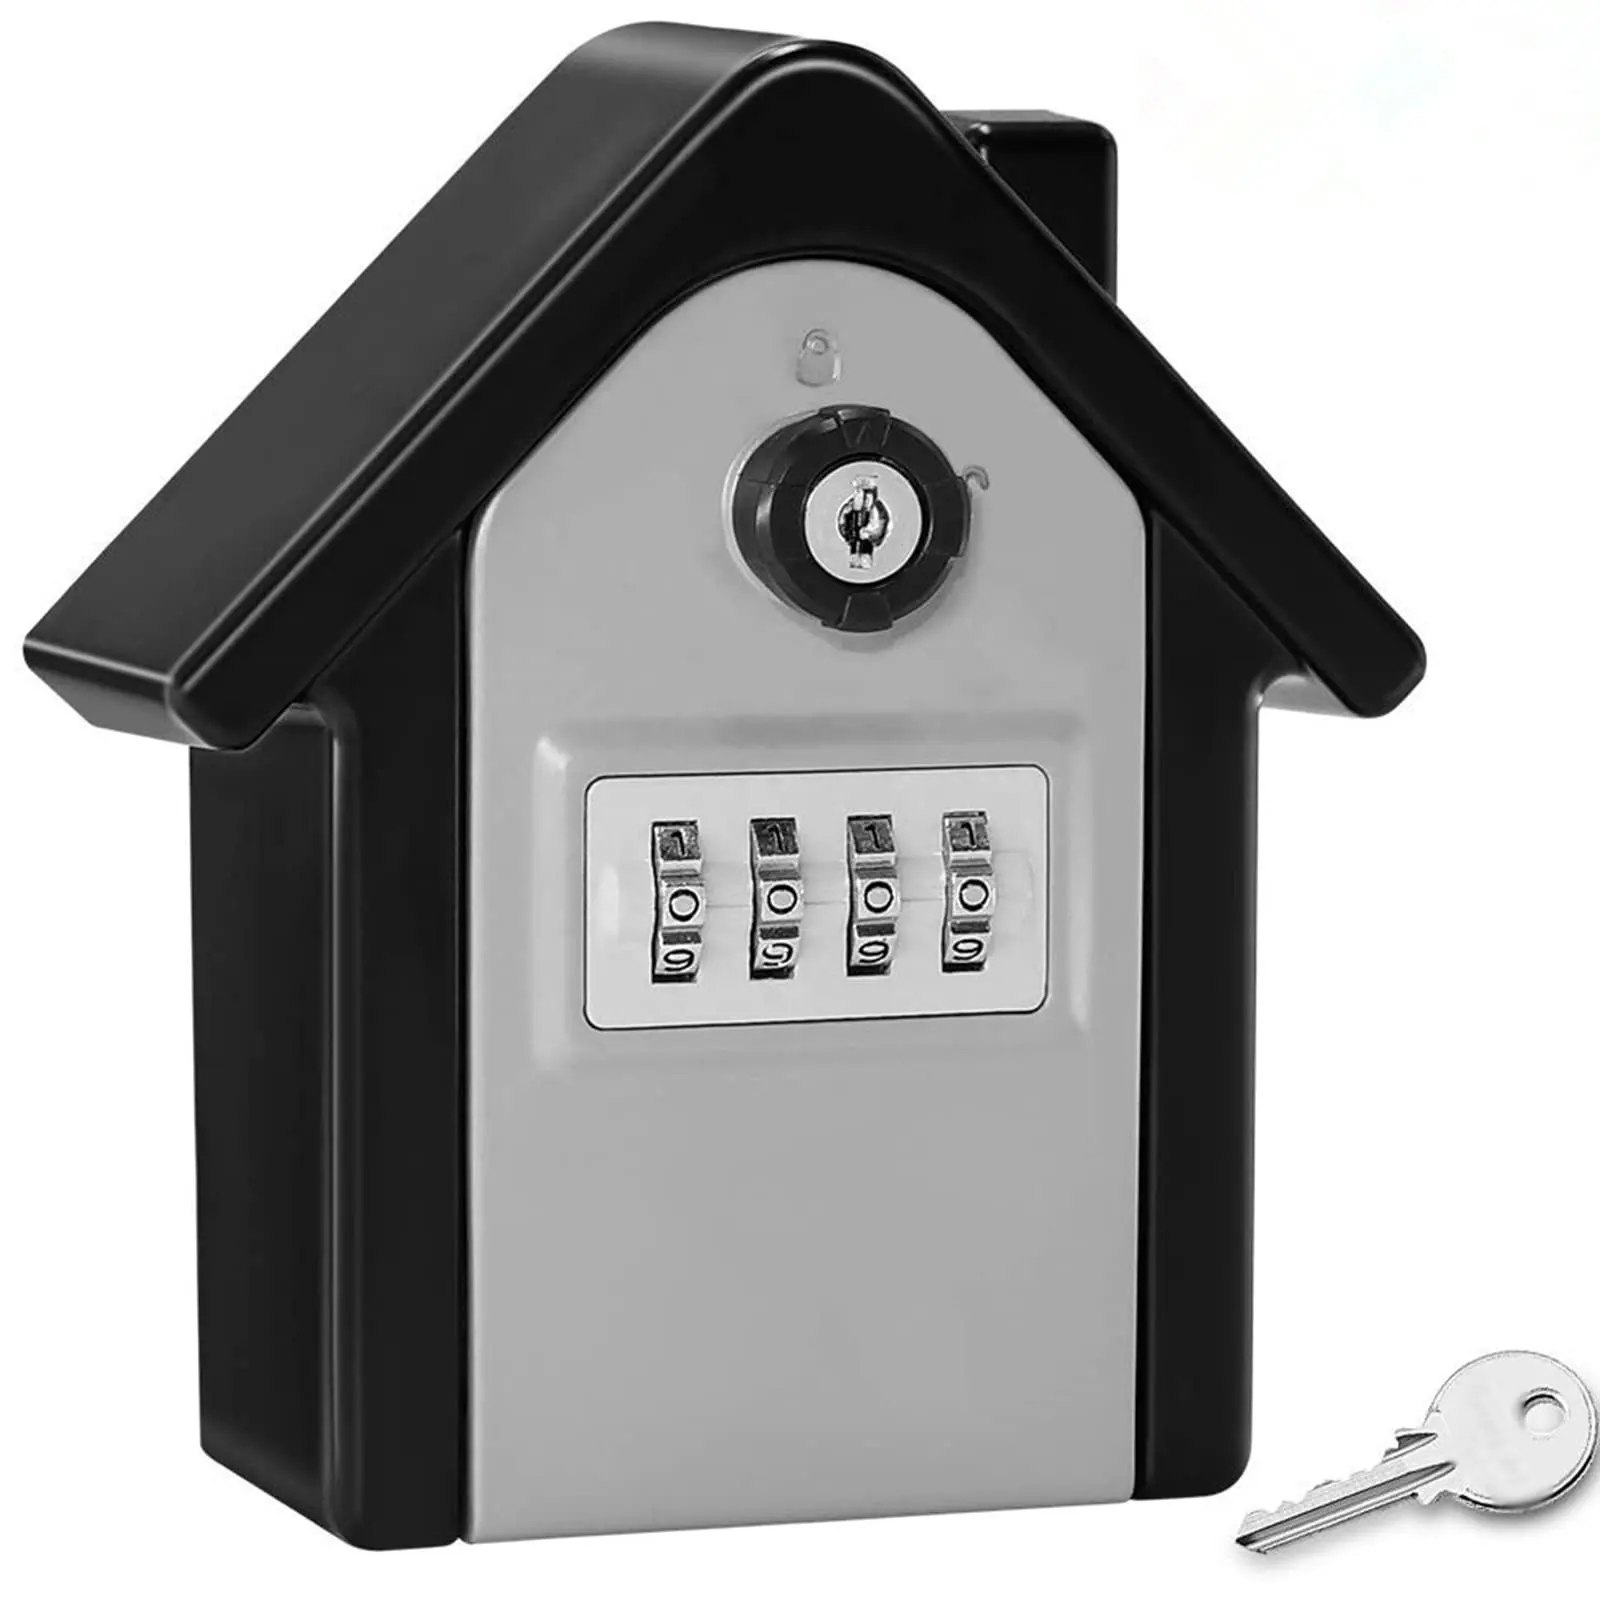 Neue Keybox Lock Key Safe Box Außenwand halterung Kombination Passwort Schloss Versteckte Schlüssel Aufbewahrung sbox Sicherheits safes für das Home Office